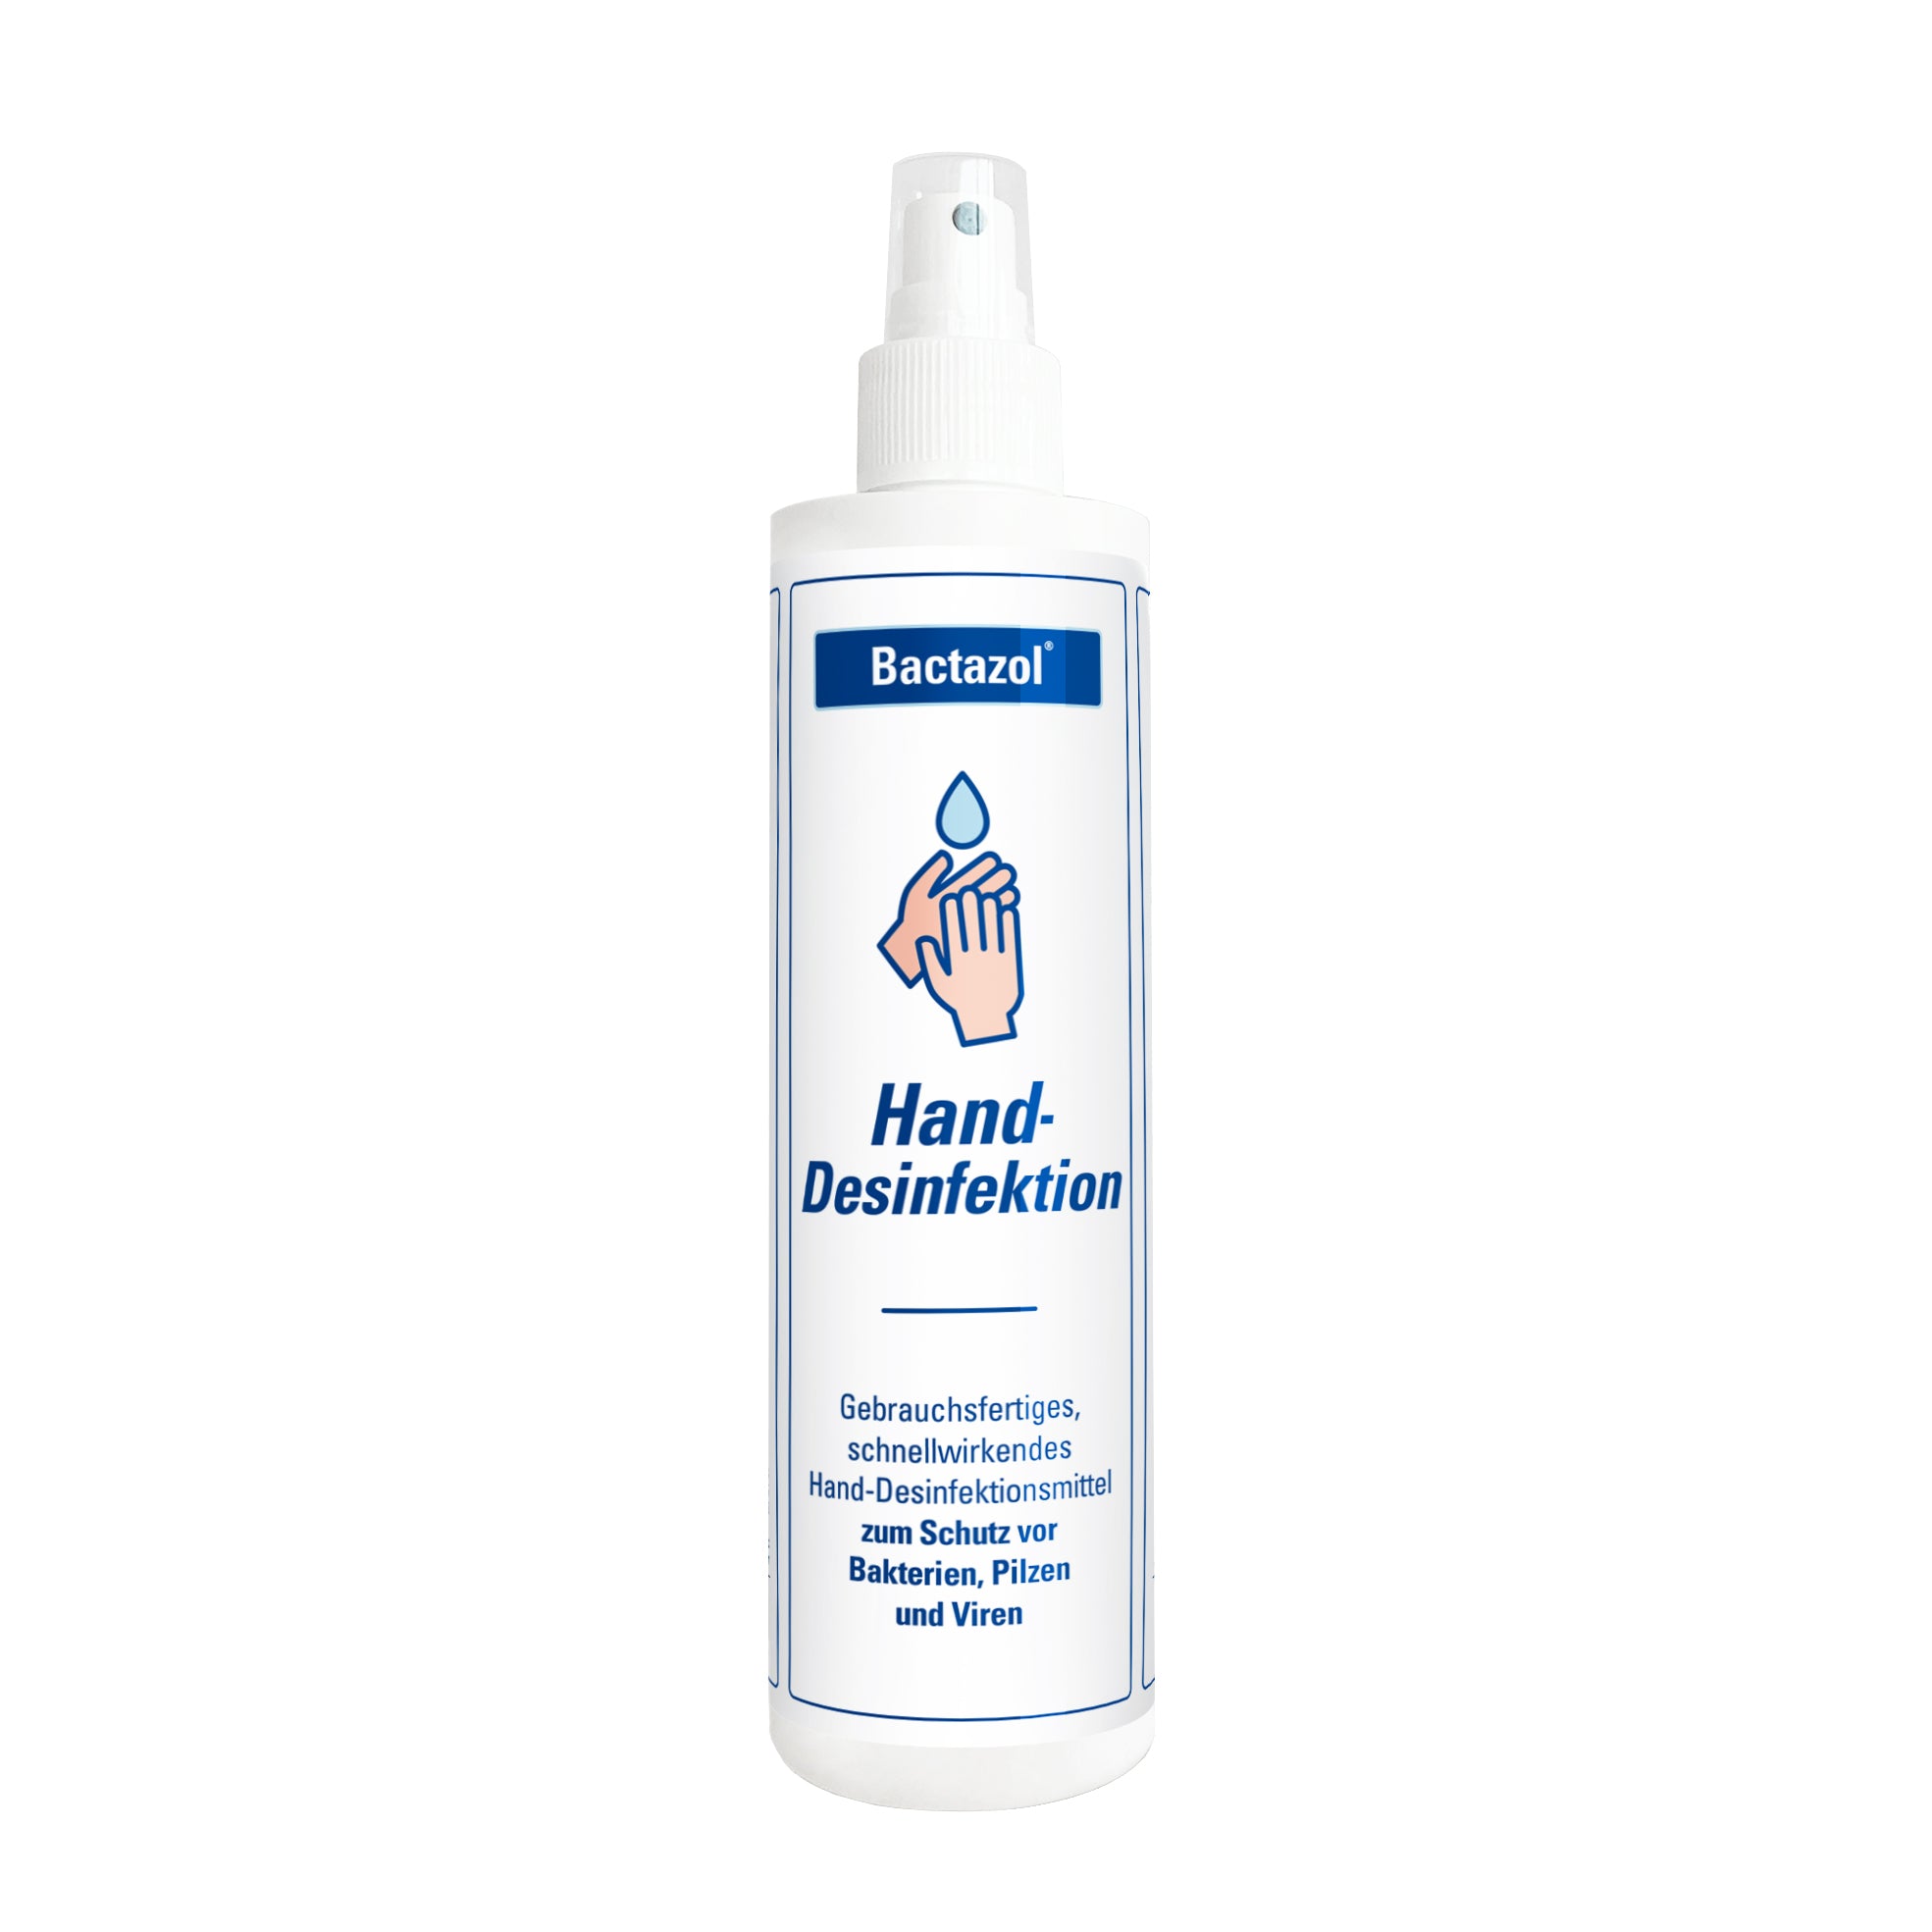 Bactazol Hand-Desinfektion 250 ml vorne